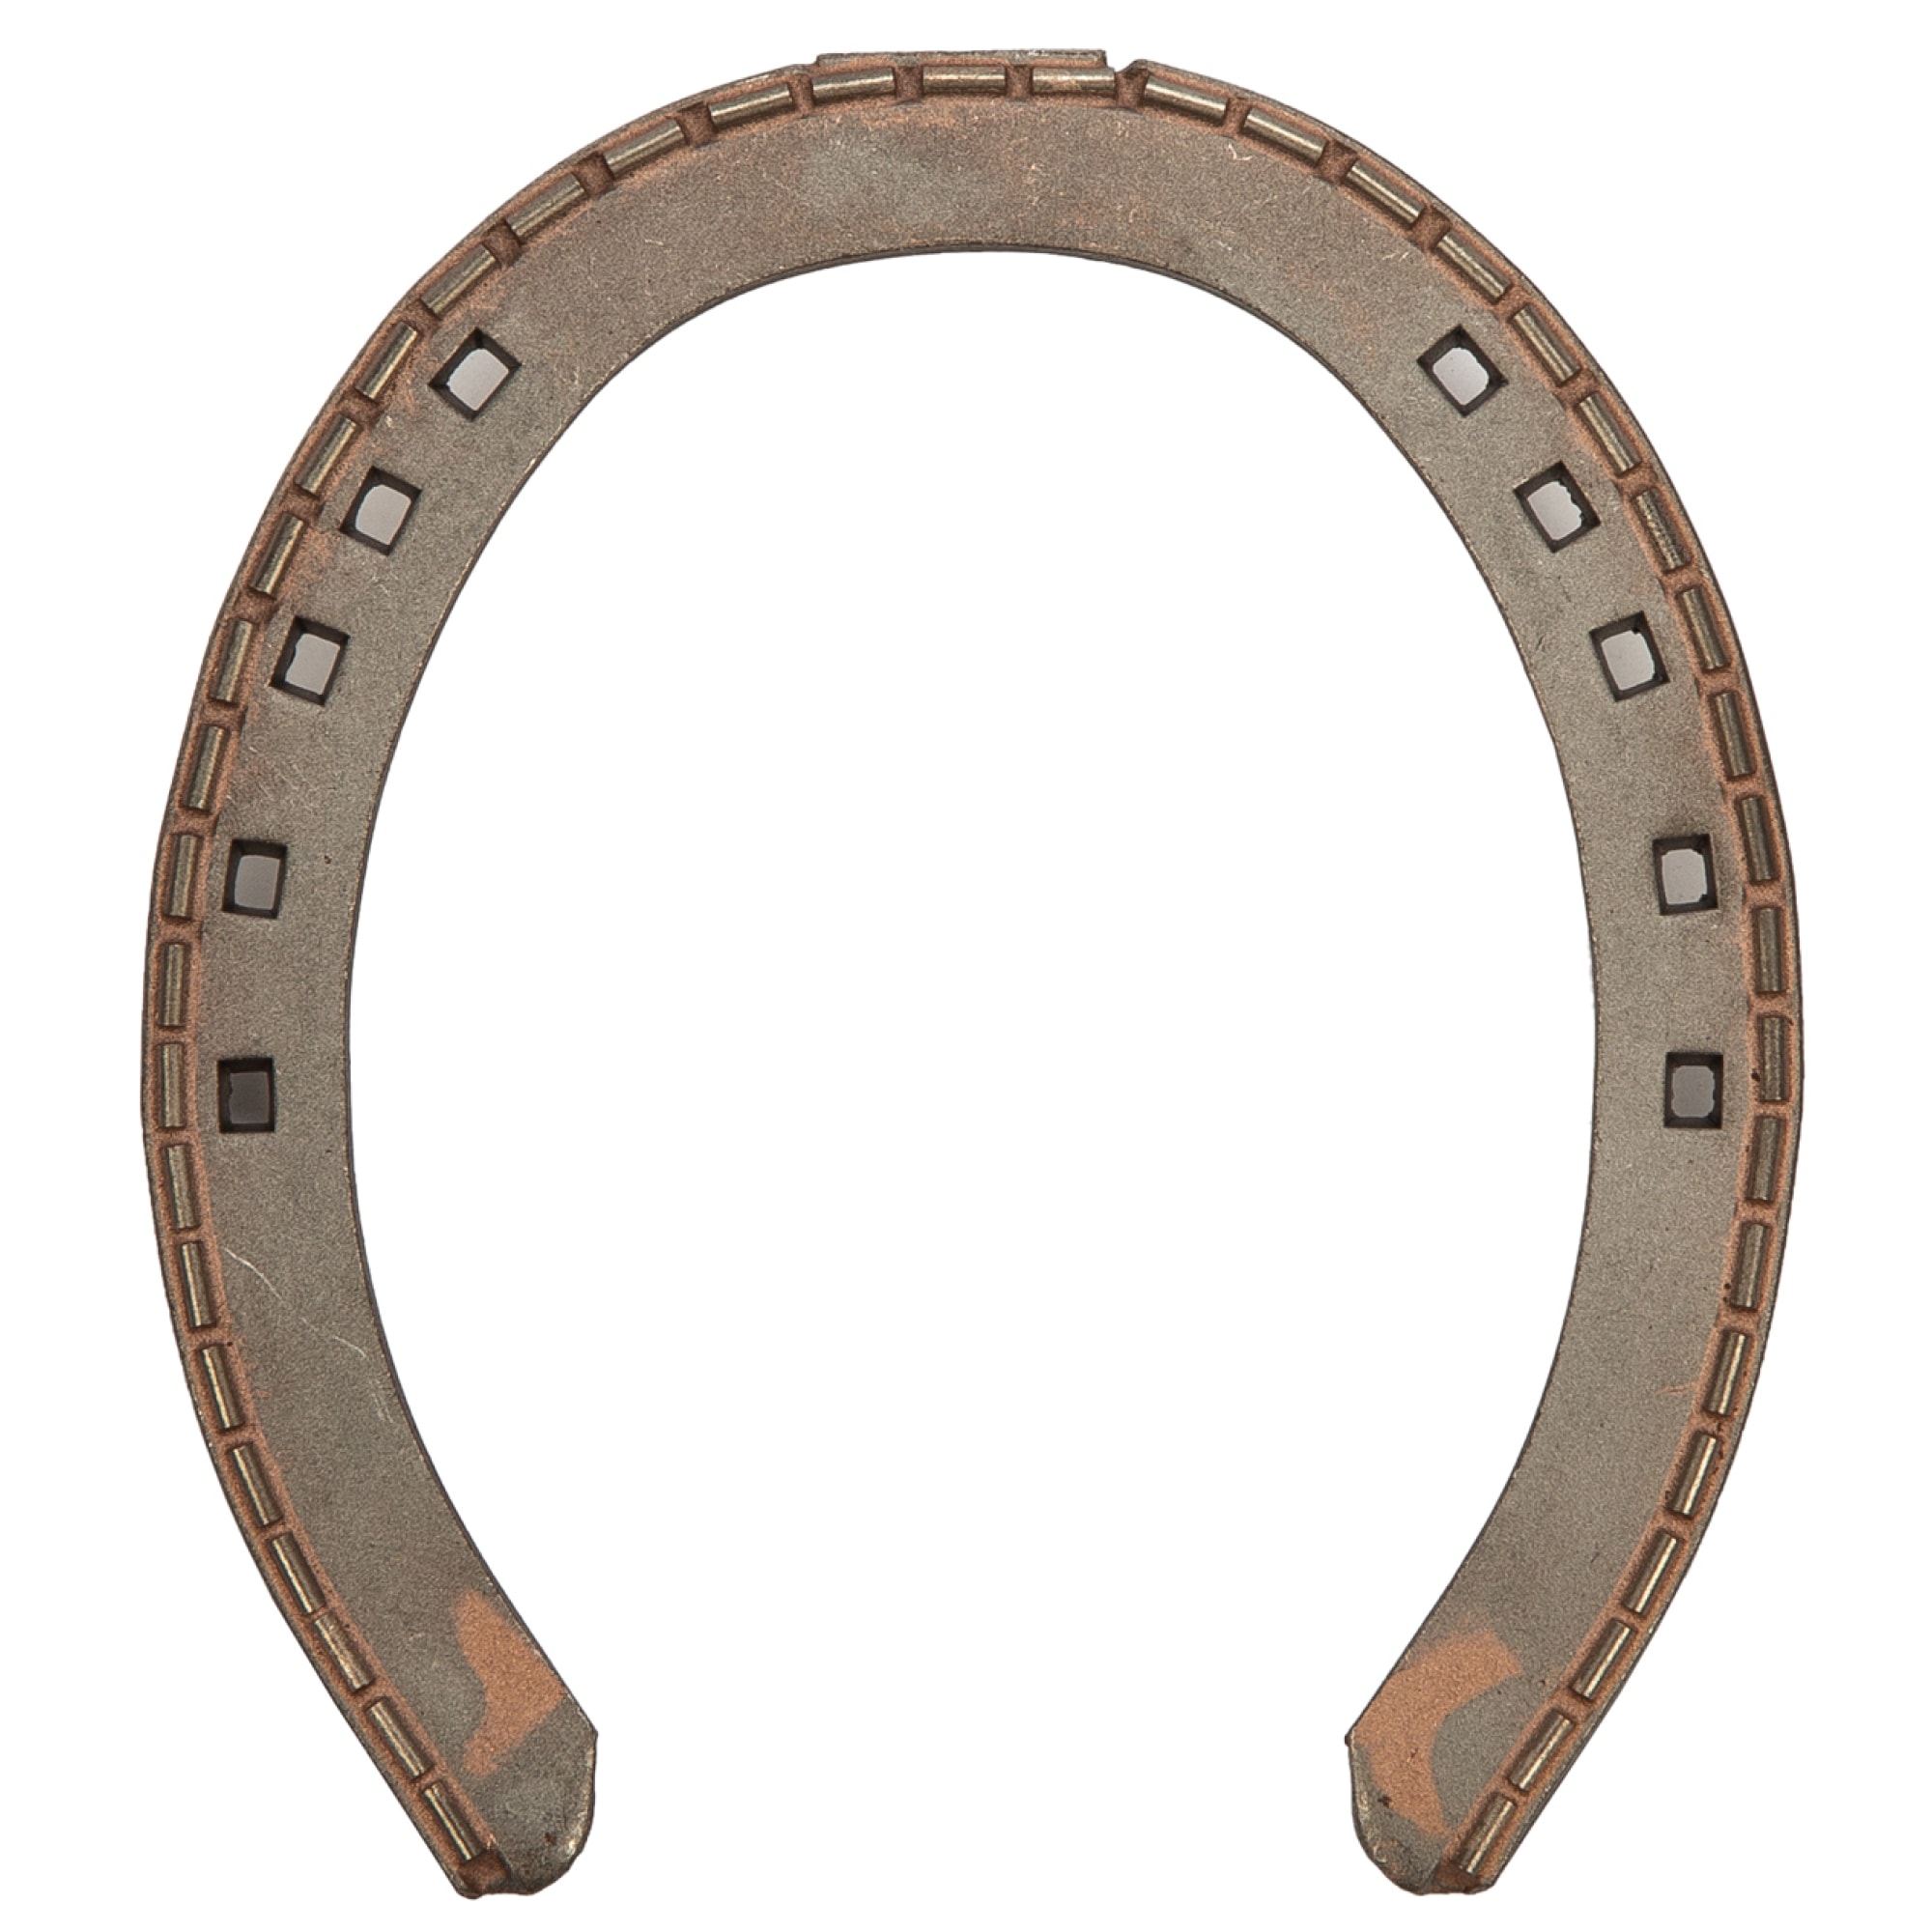 Hard metal horseshoe (goldshoe)15x4